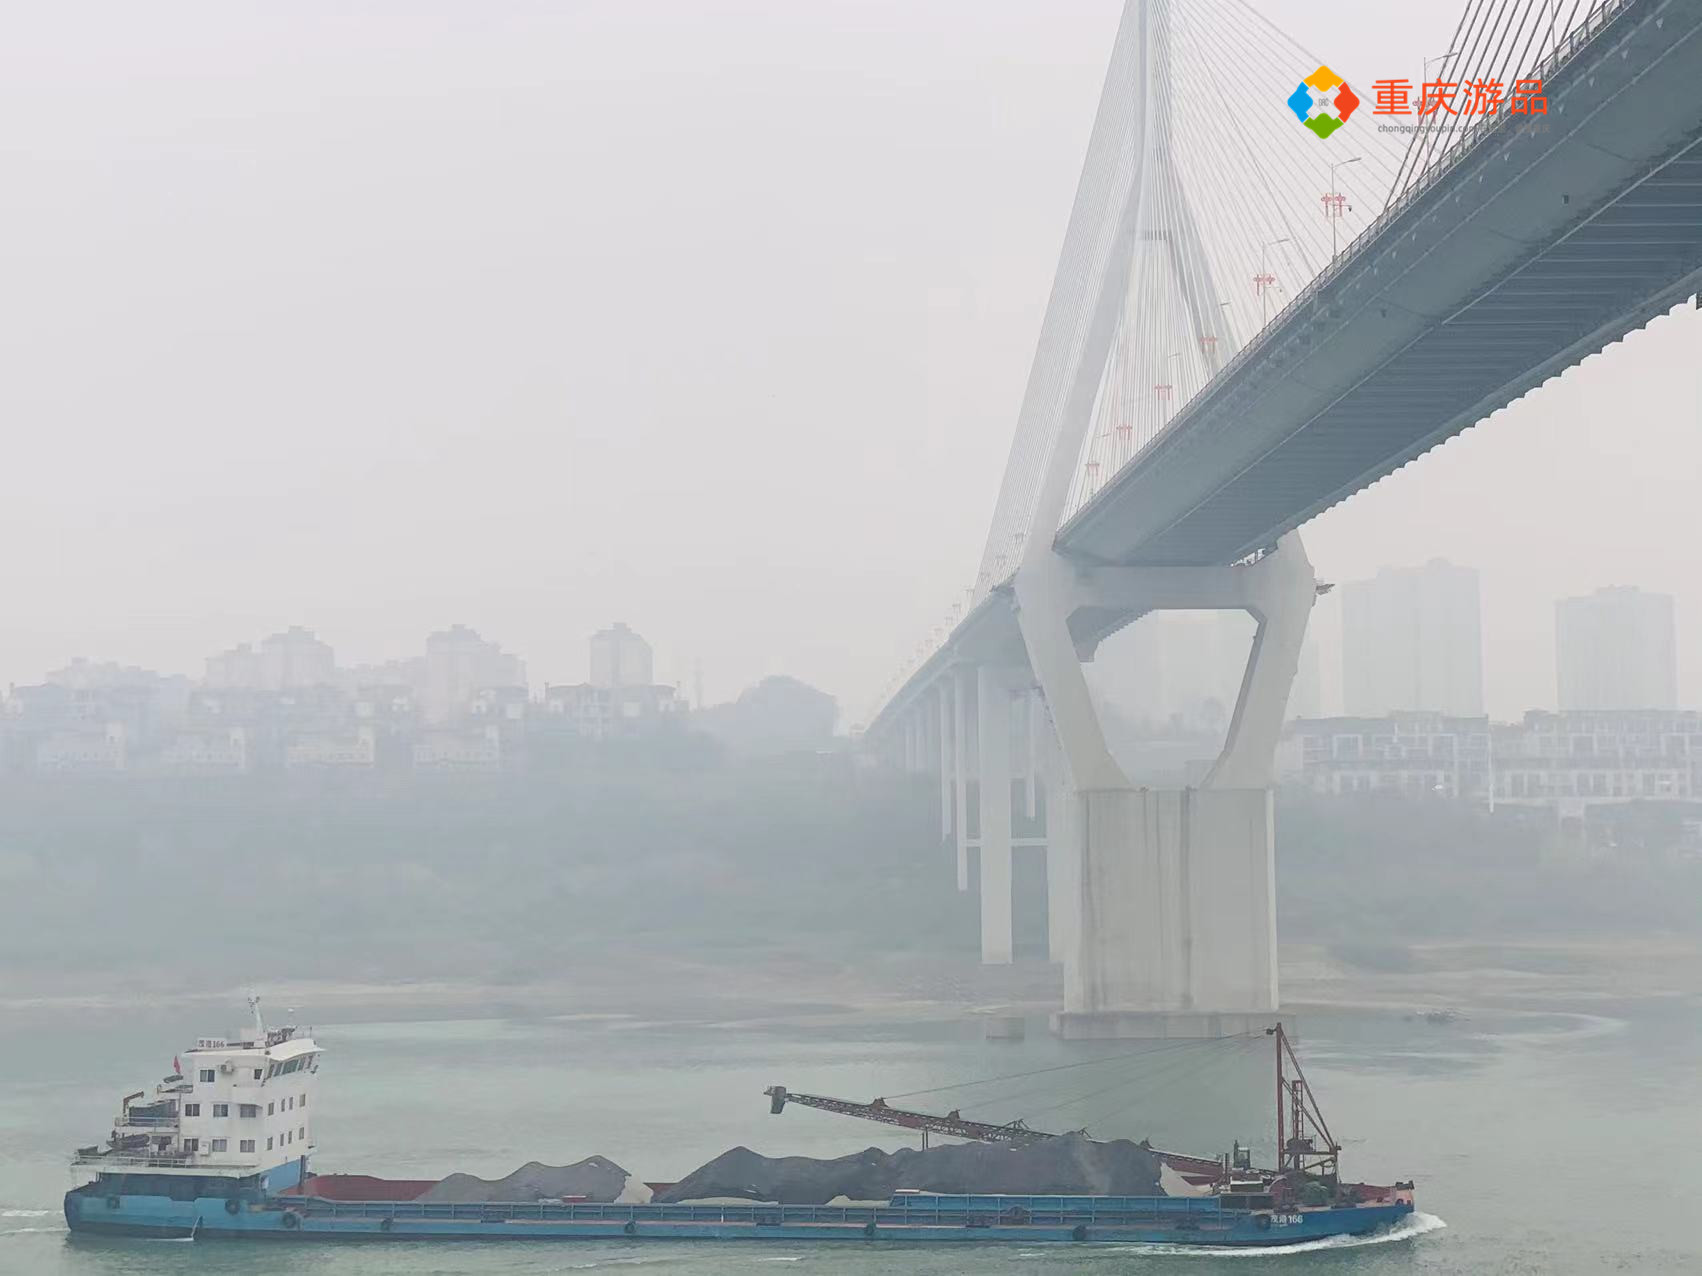 重庆居然还有这样的桥!马桑溪长江大桥,只看了一眼就被震撼到了